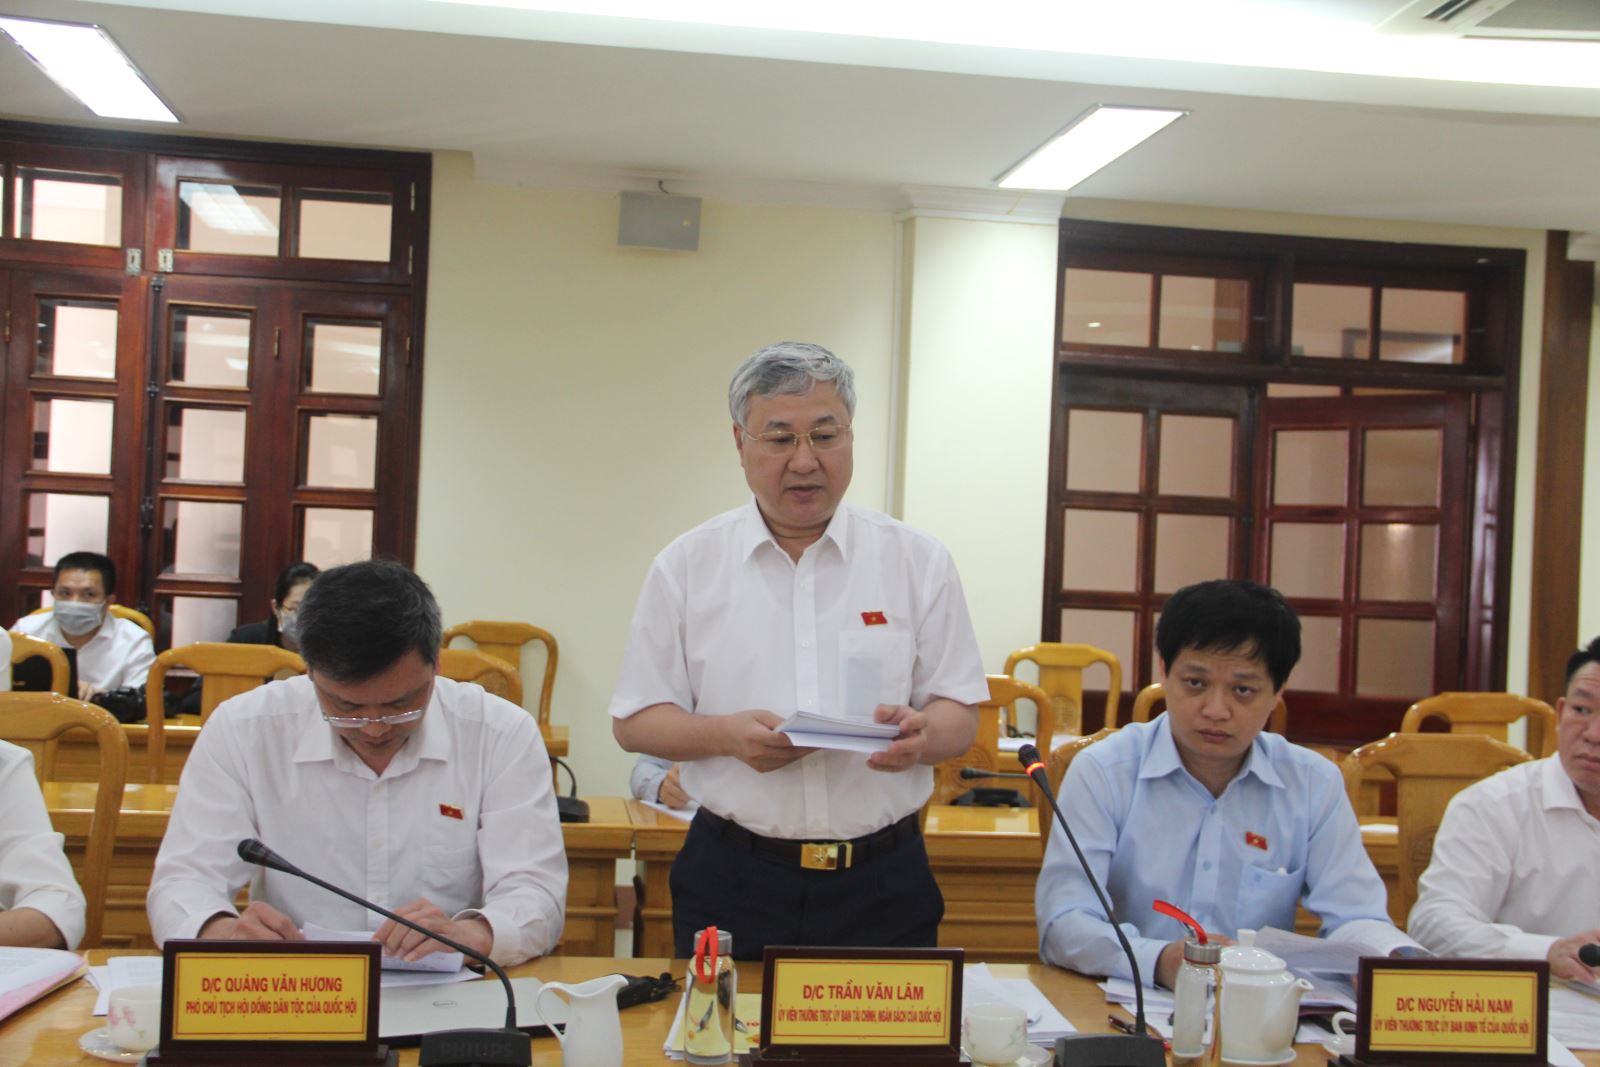 Ủy viên Thường trực Ủy ban Tài chính - Ngân sách Trần Văn Lâm phát biểu